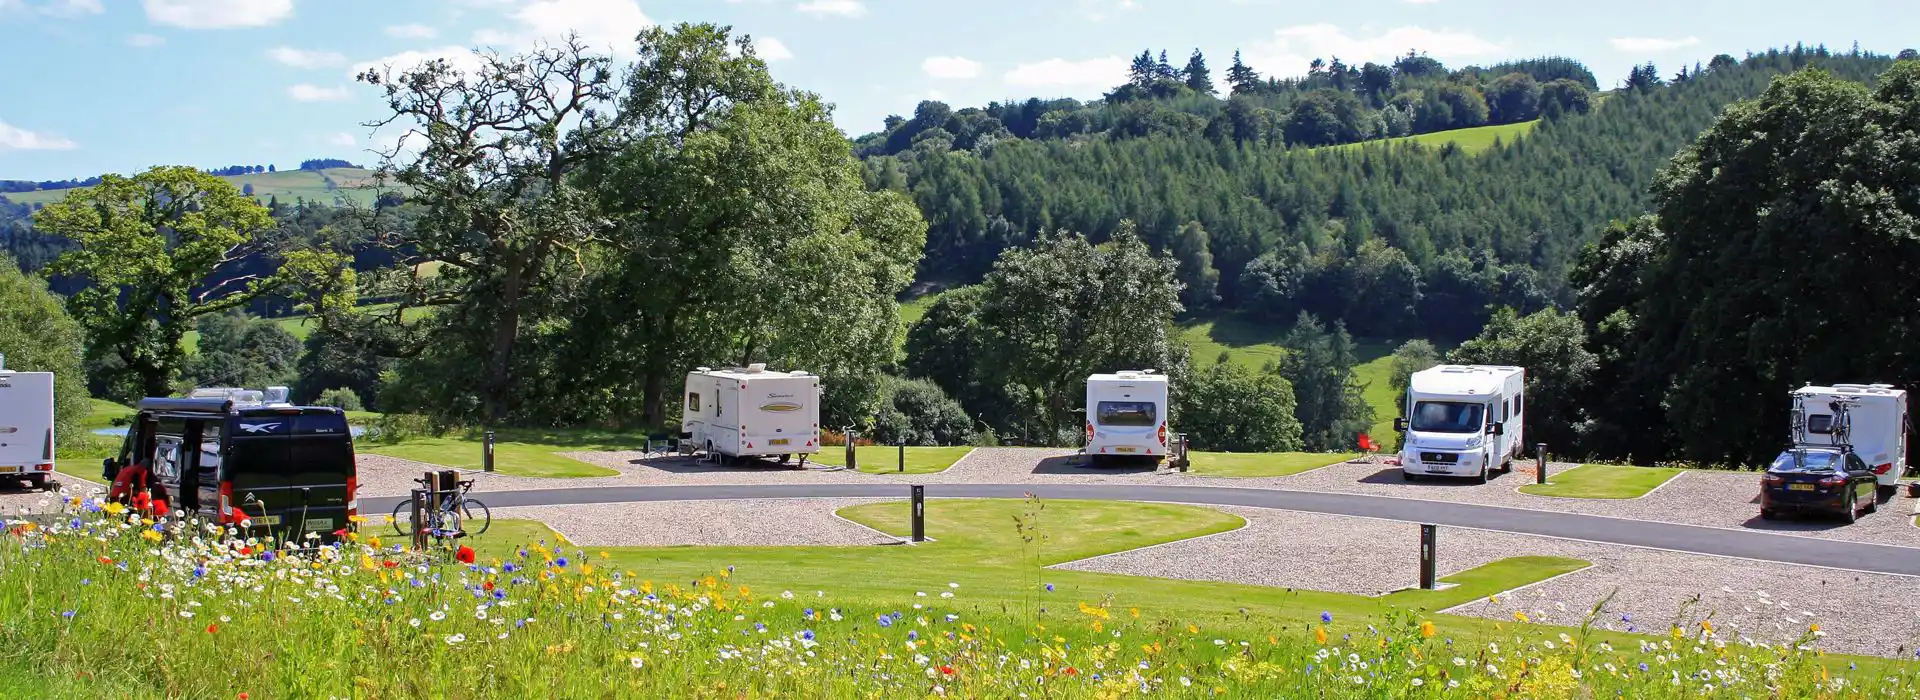 Caravan parks in Powys